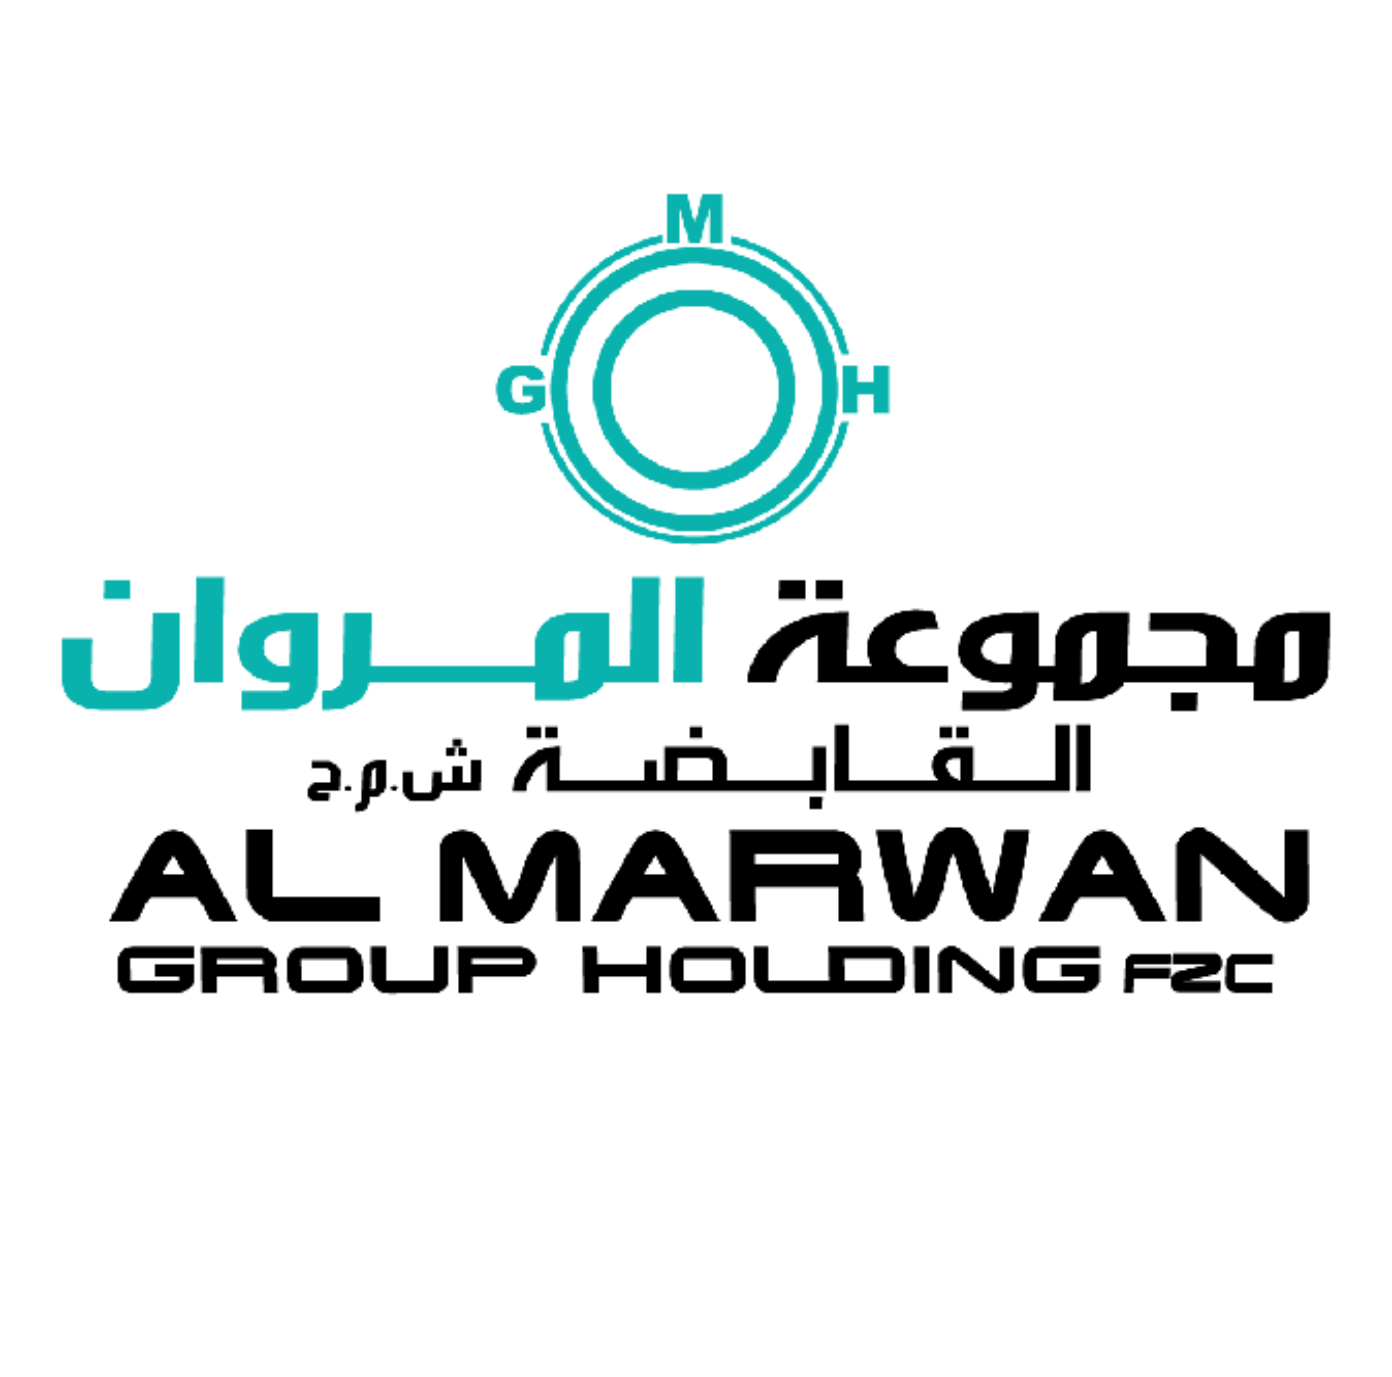 Marwan Group company